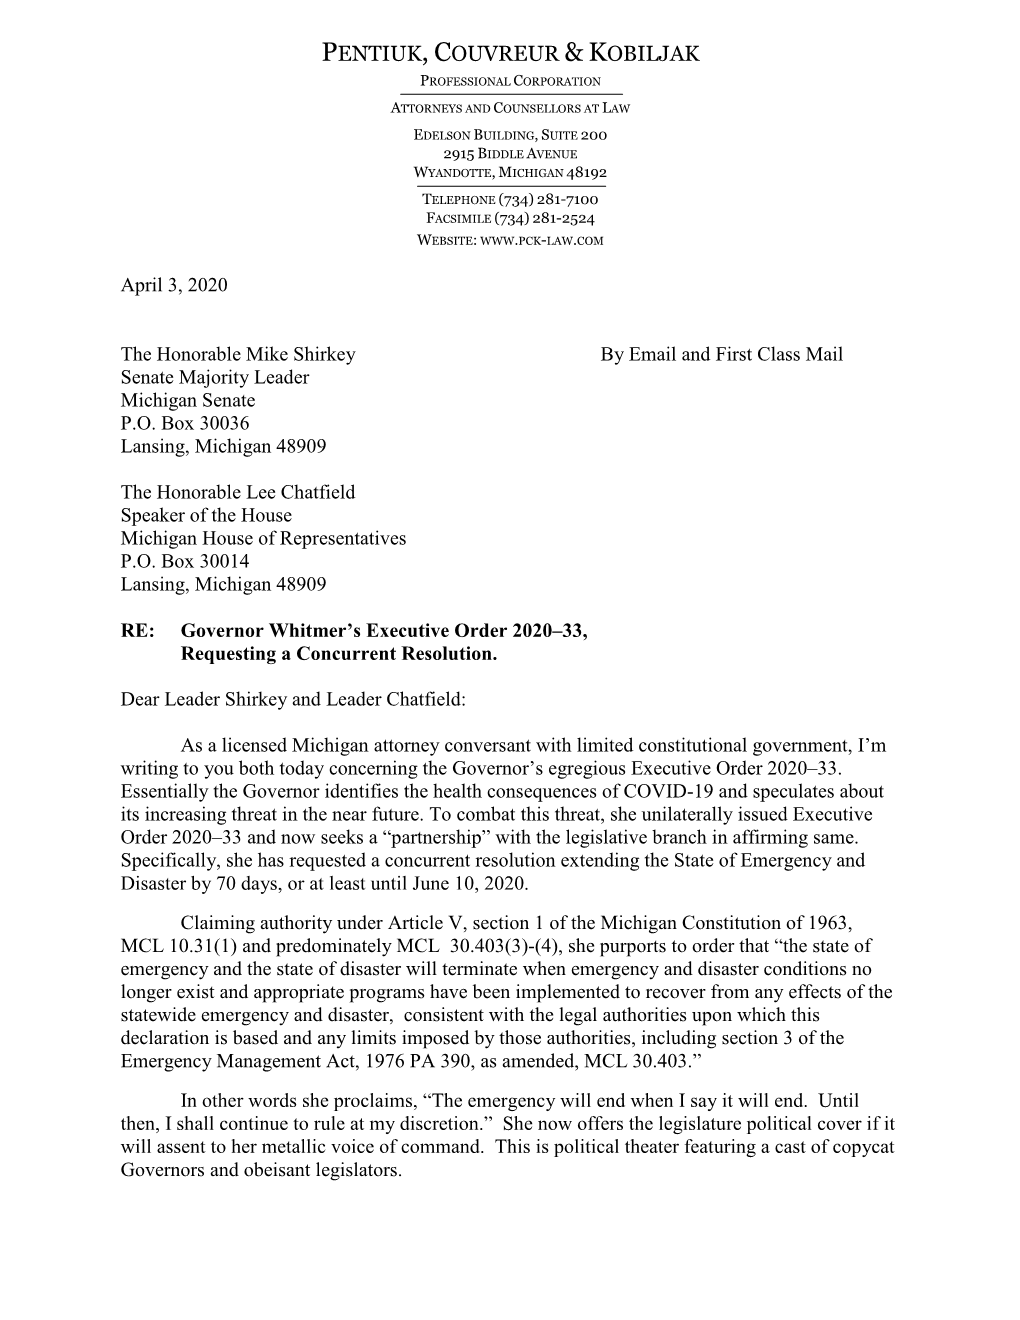 COVID-19 Response Letter to Michigan Legislature